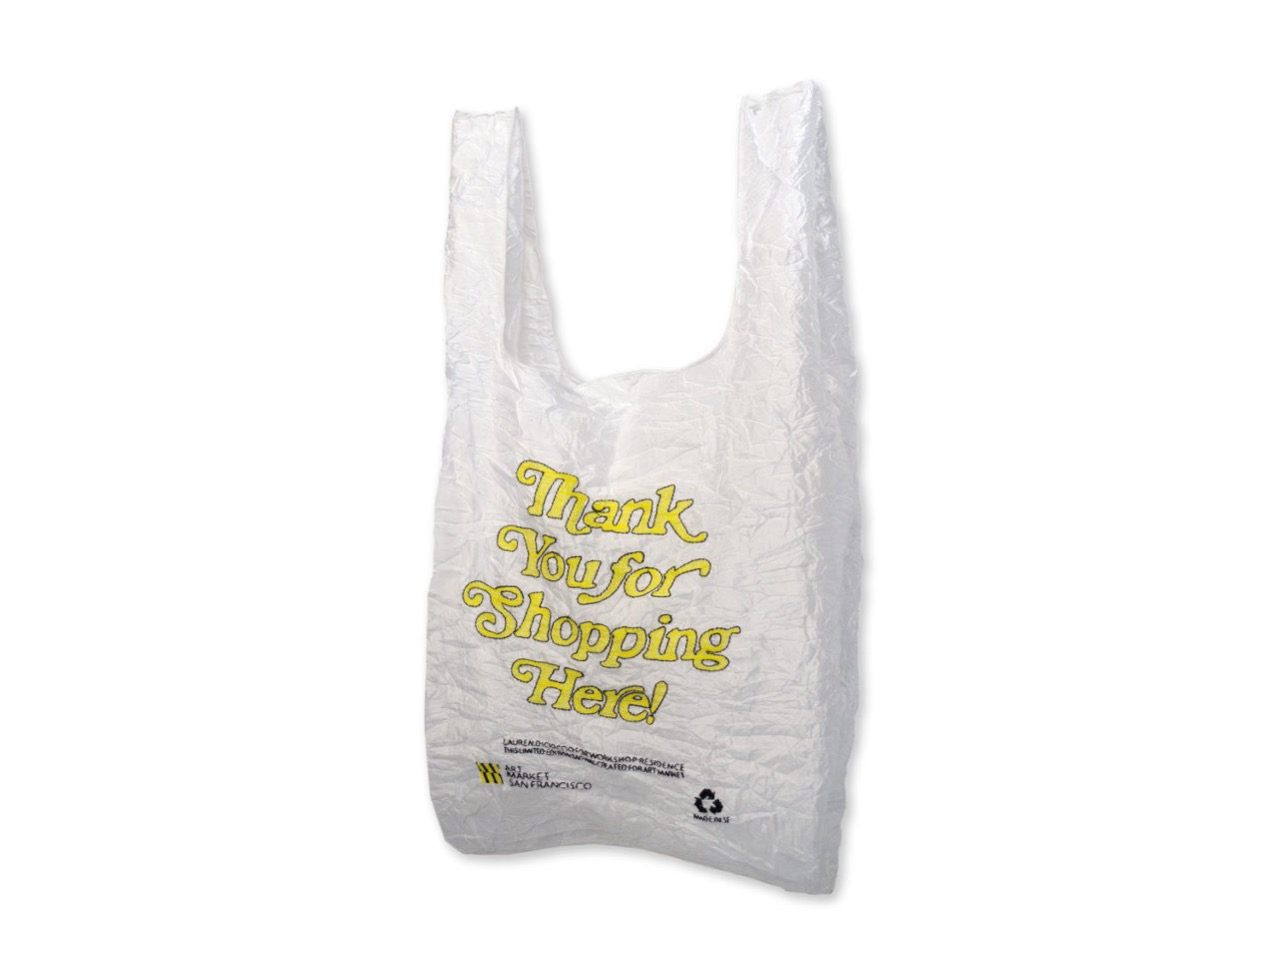 thank-you-for-shopping-bag-open-editions-lauren-dicioccio_1024x1024